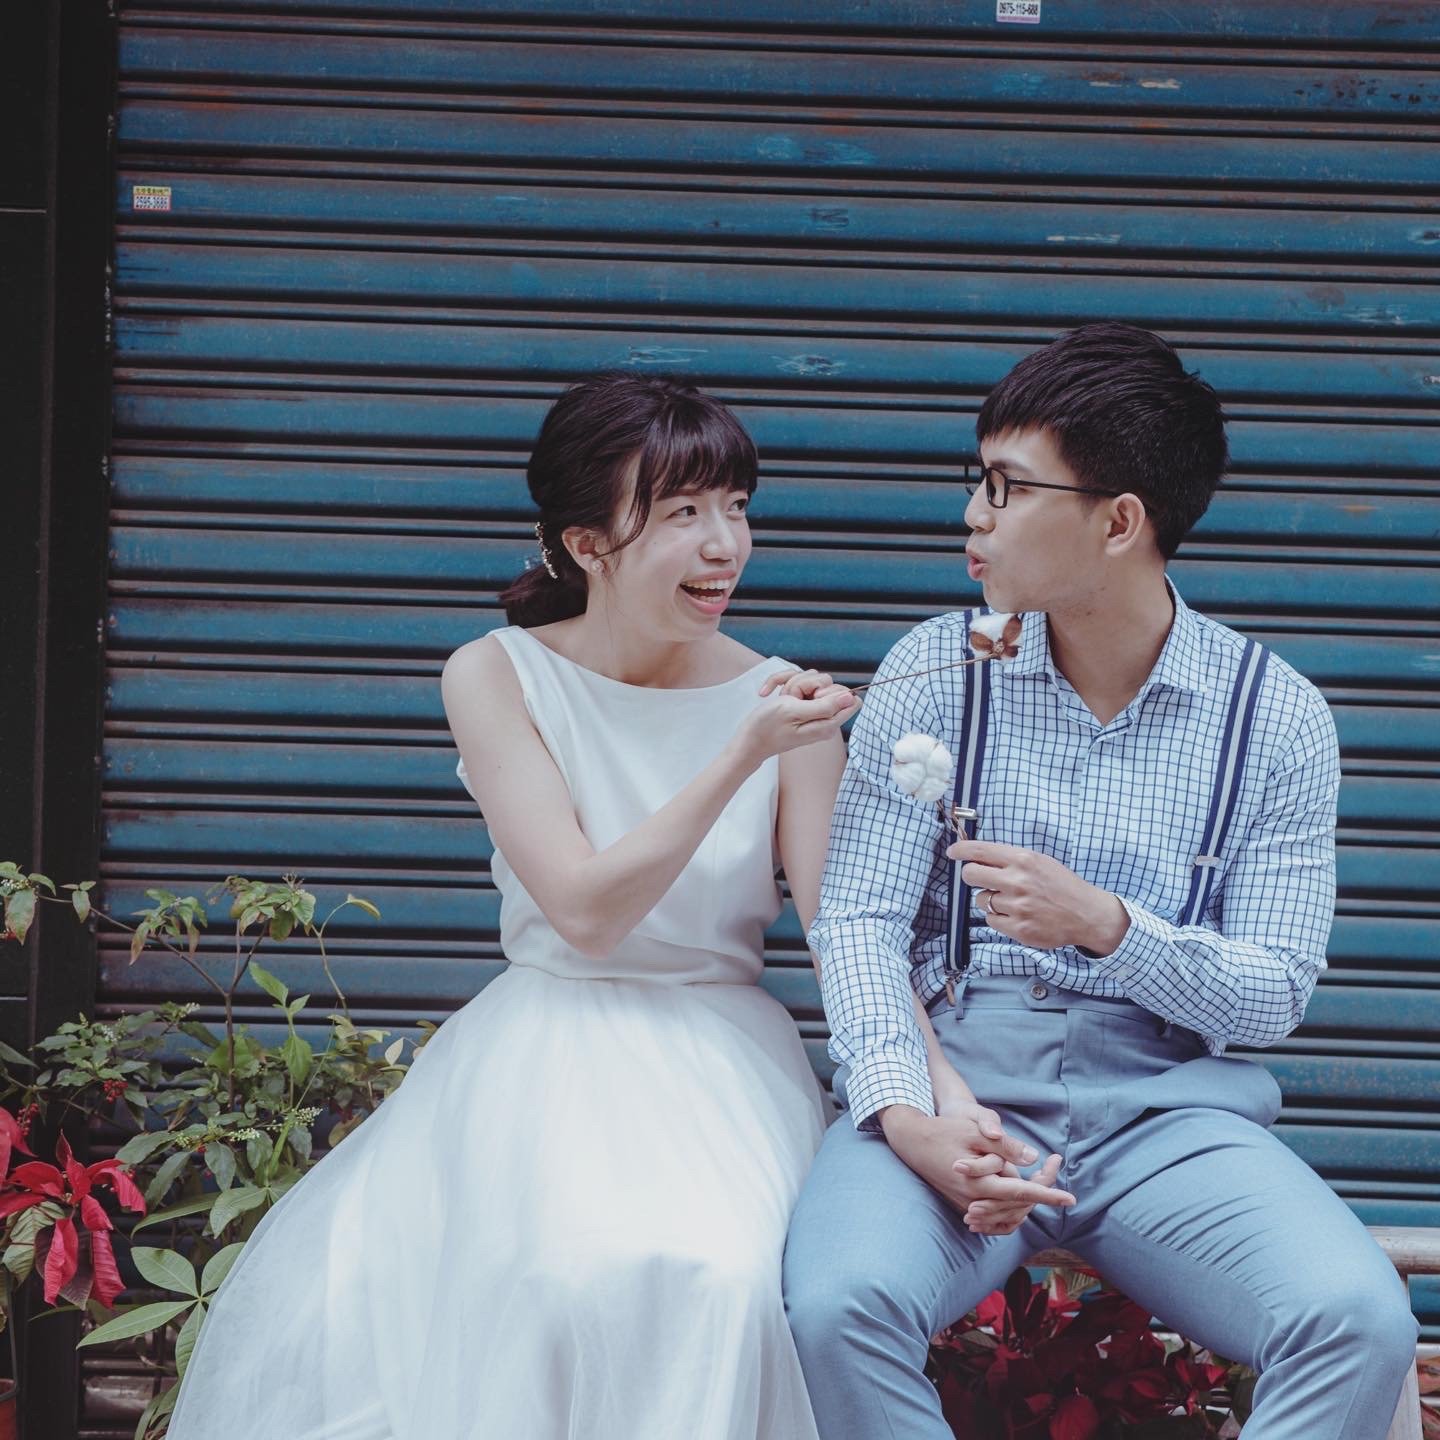 清新簡單生活化婚紗照-結婚經驗分享